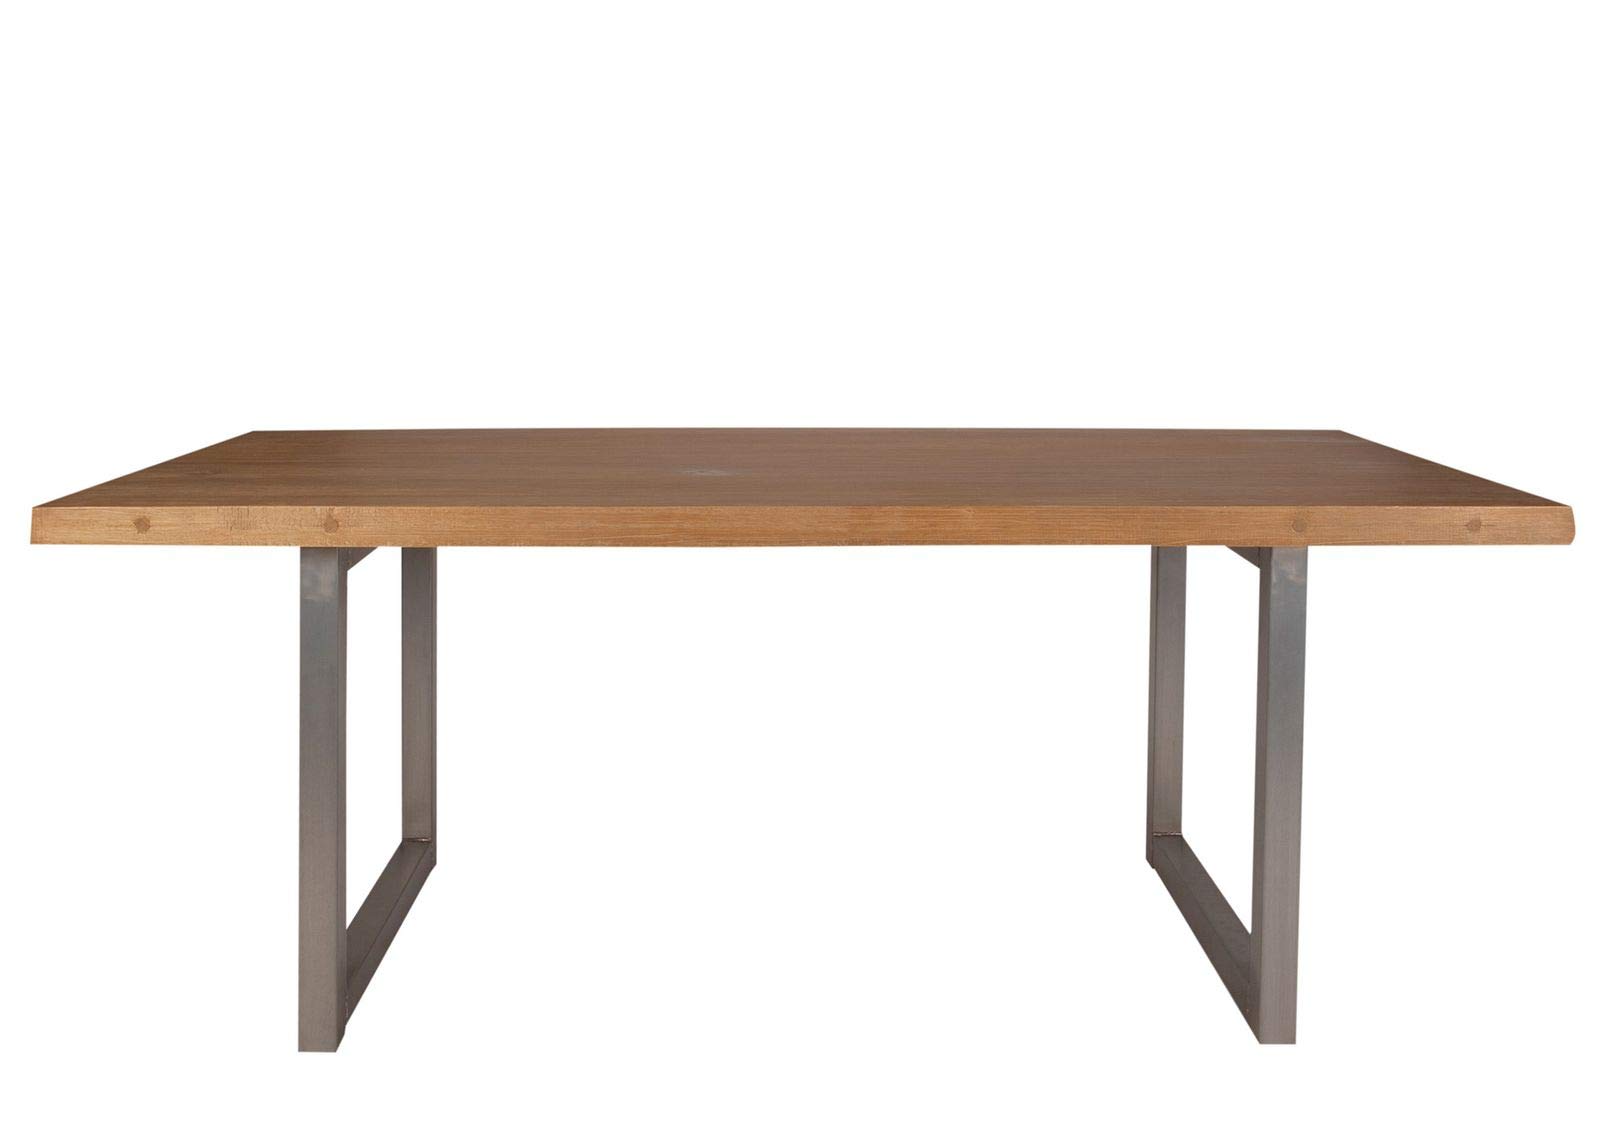 Sit Möbel Tischgestell, Metall, Breite: 75 cm, Tiefe: 15 cm, Höhe: 73 cm